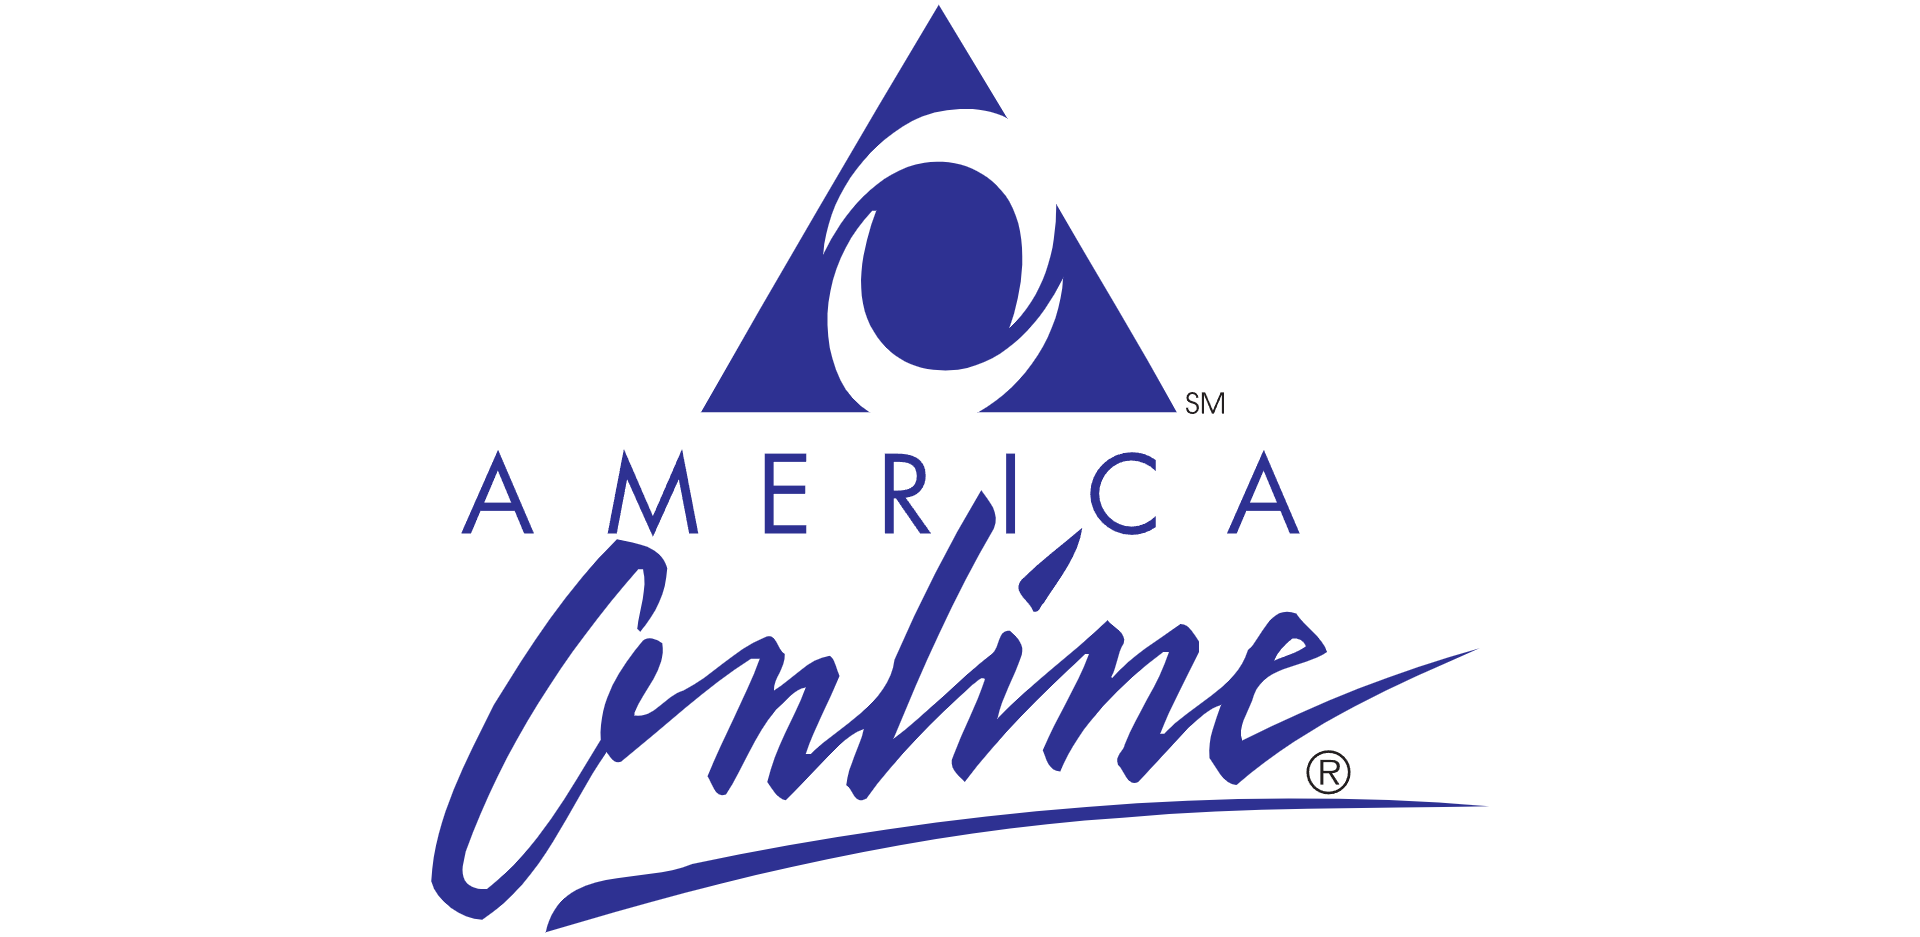 Old AOL logo